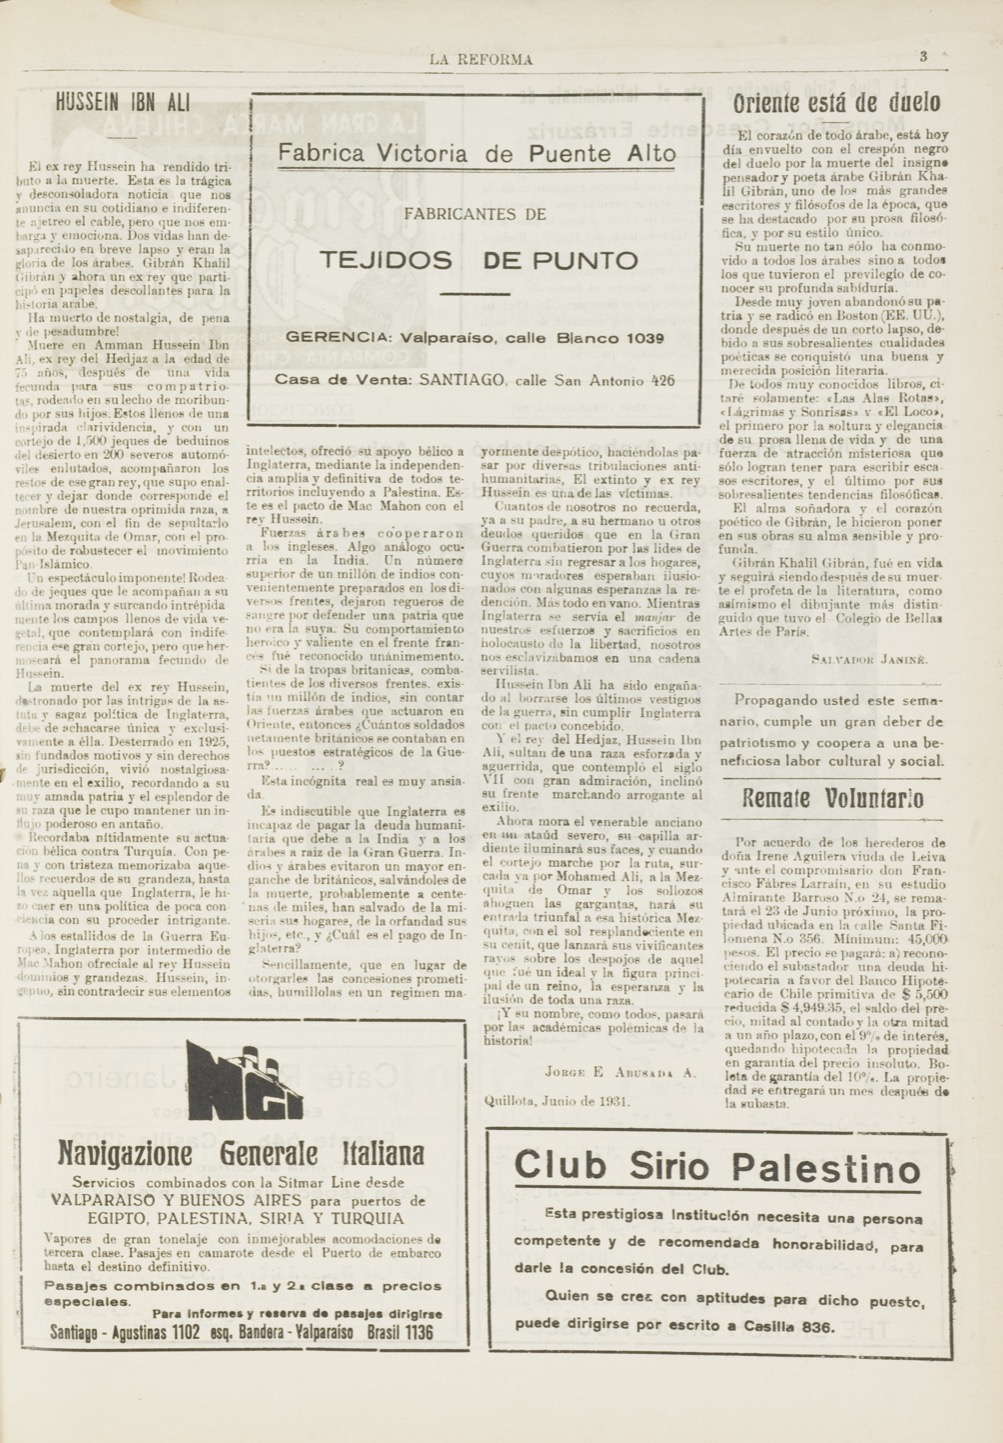 Salvador Janiné, "Oriente está de duelo", La Reforma, Jun 13, 1931, p. 3.